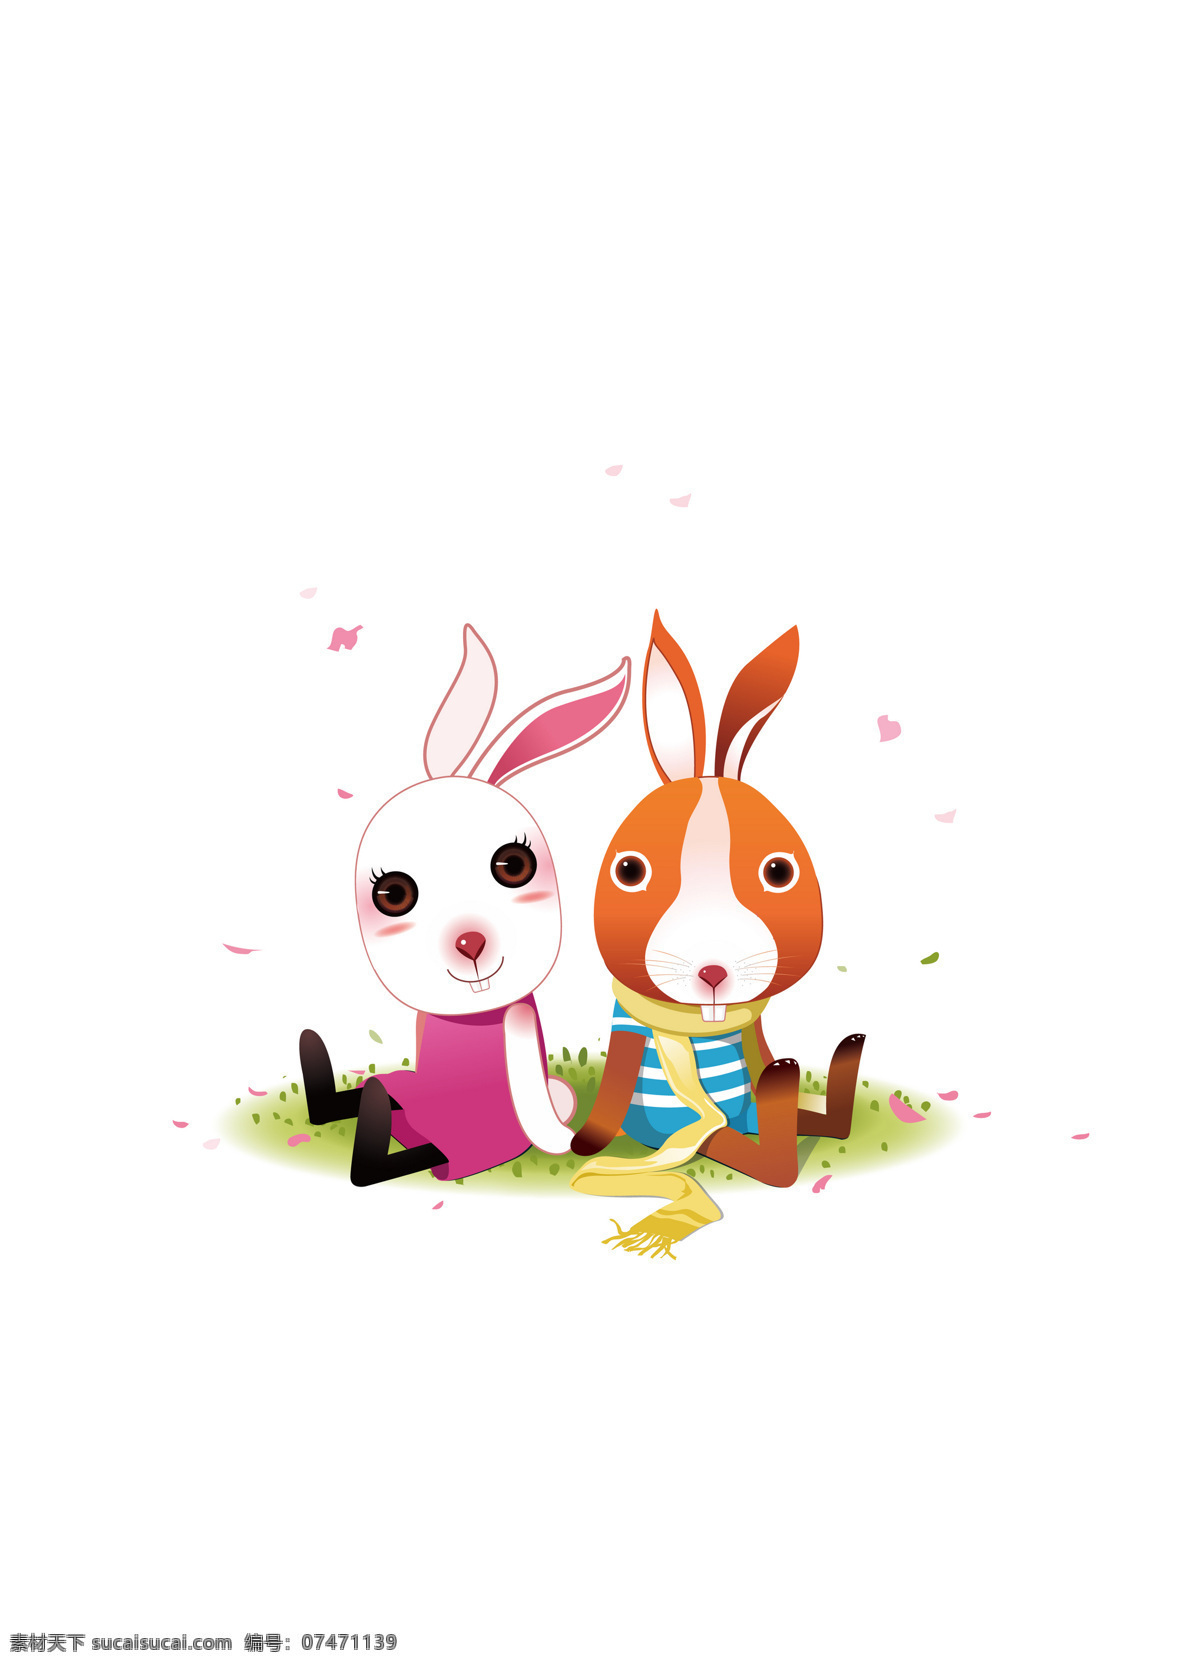 爱情 插画 动漫动画 卡通 卡通兔 可爱 漫画 情侣 兔 设计素材 模板下载 兔子 兔年 生肖 插画集